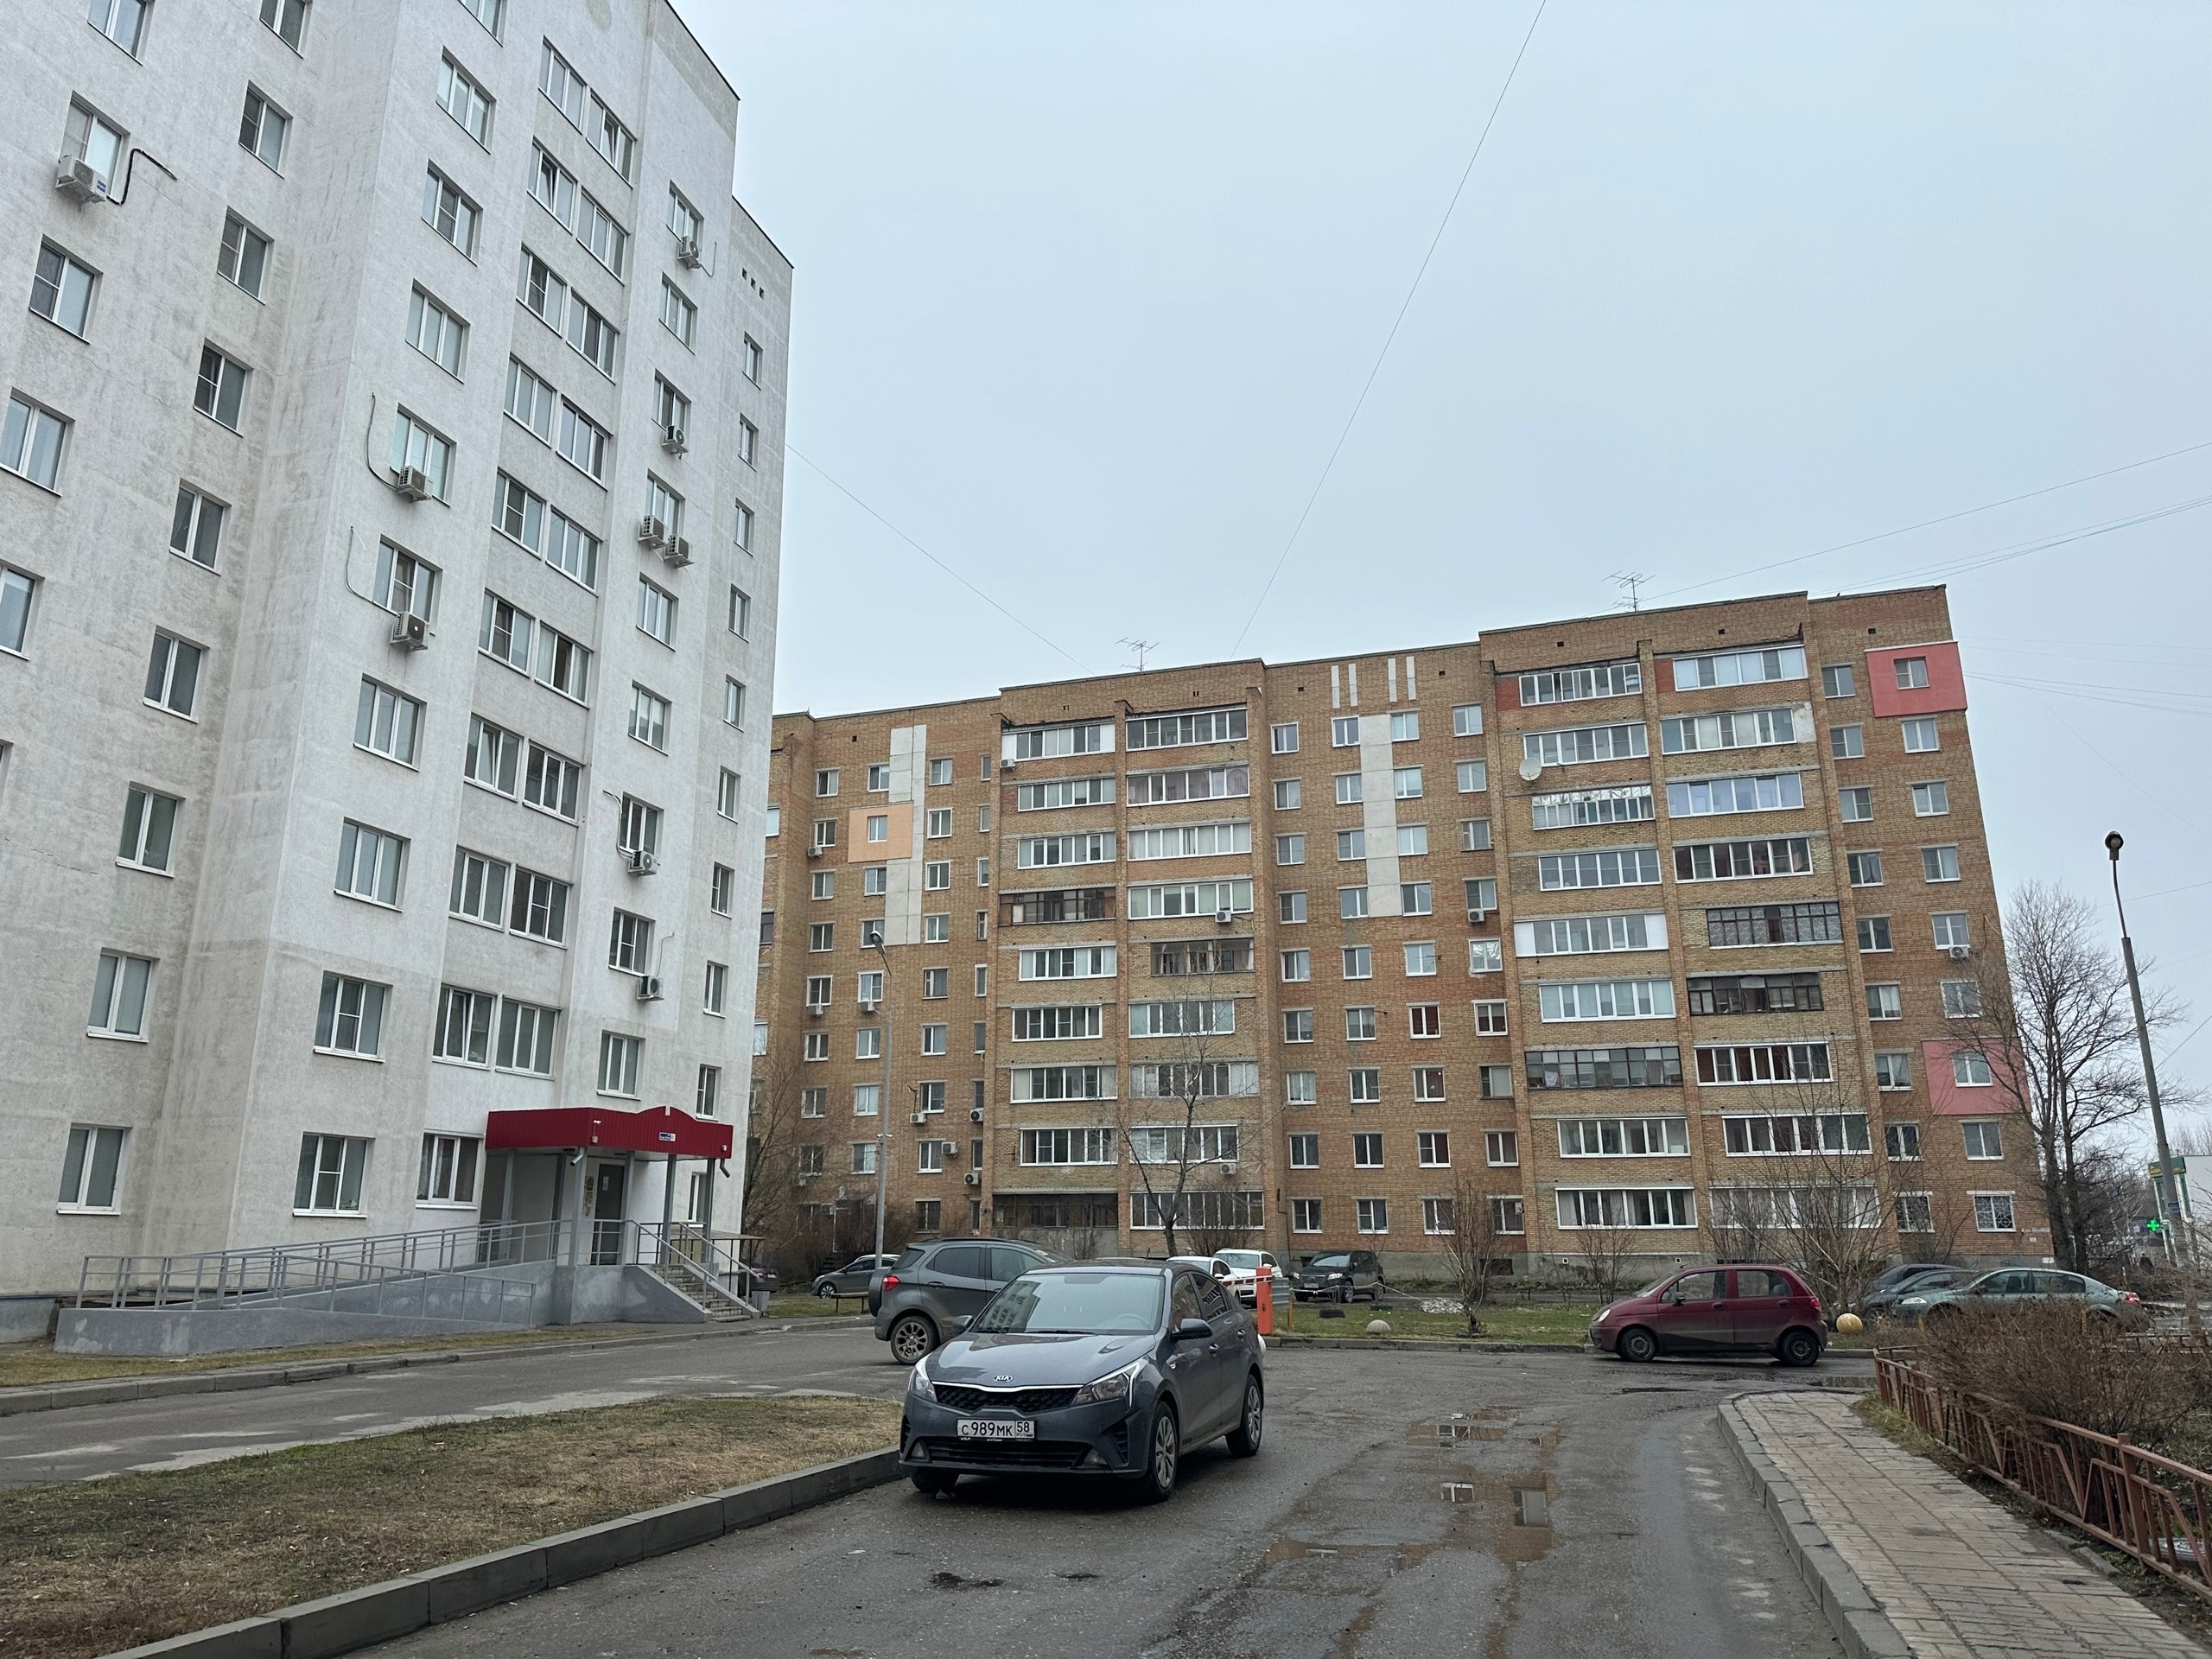 Их пропишут без согласия и ведома: для россиян, у которых есть квартира, готовят невероятный сюрприз